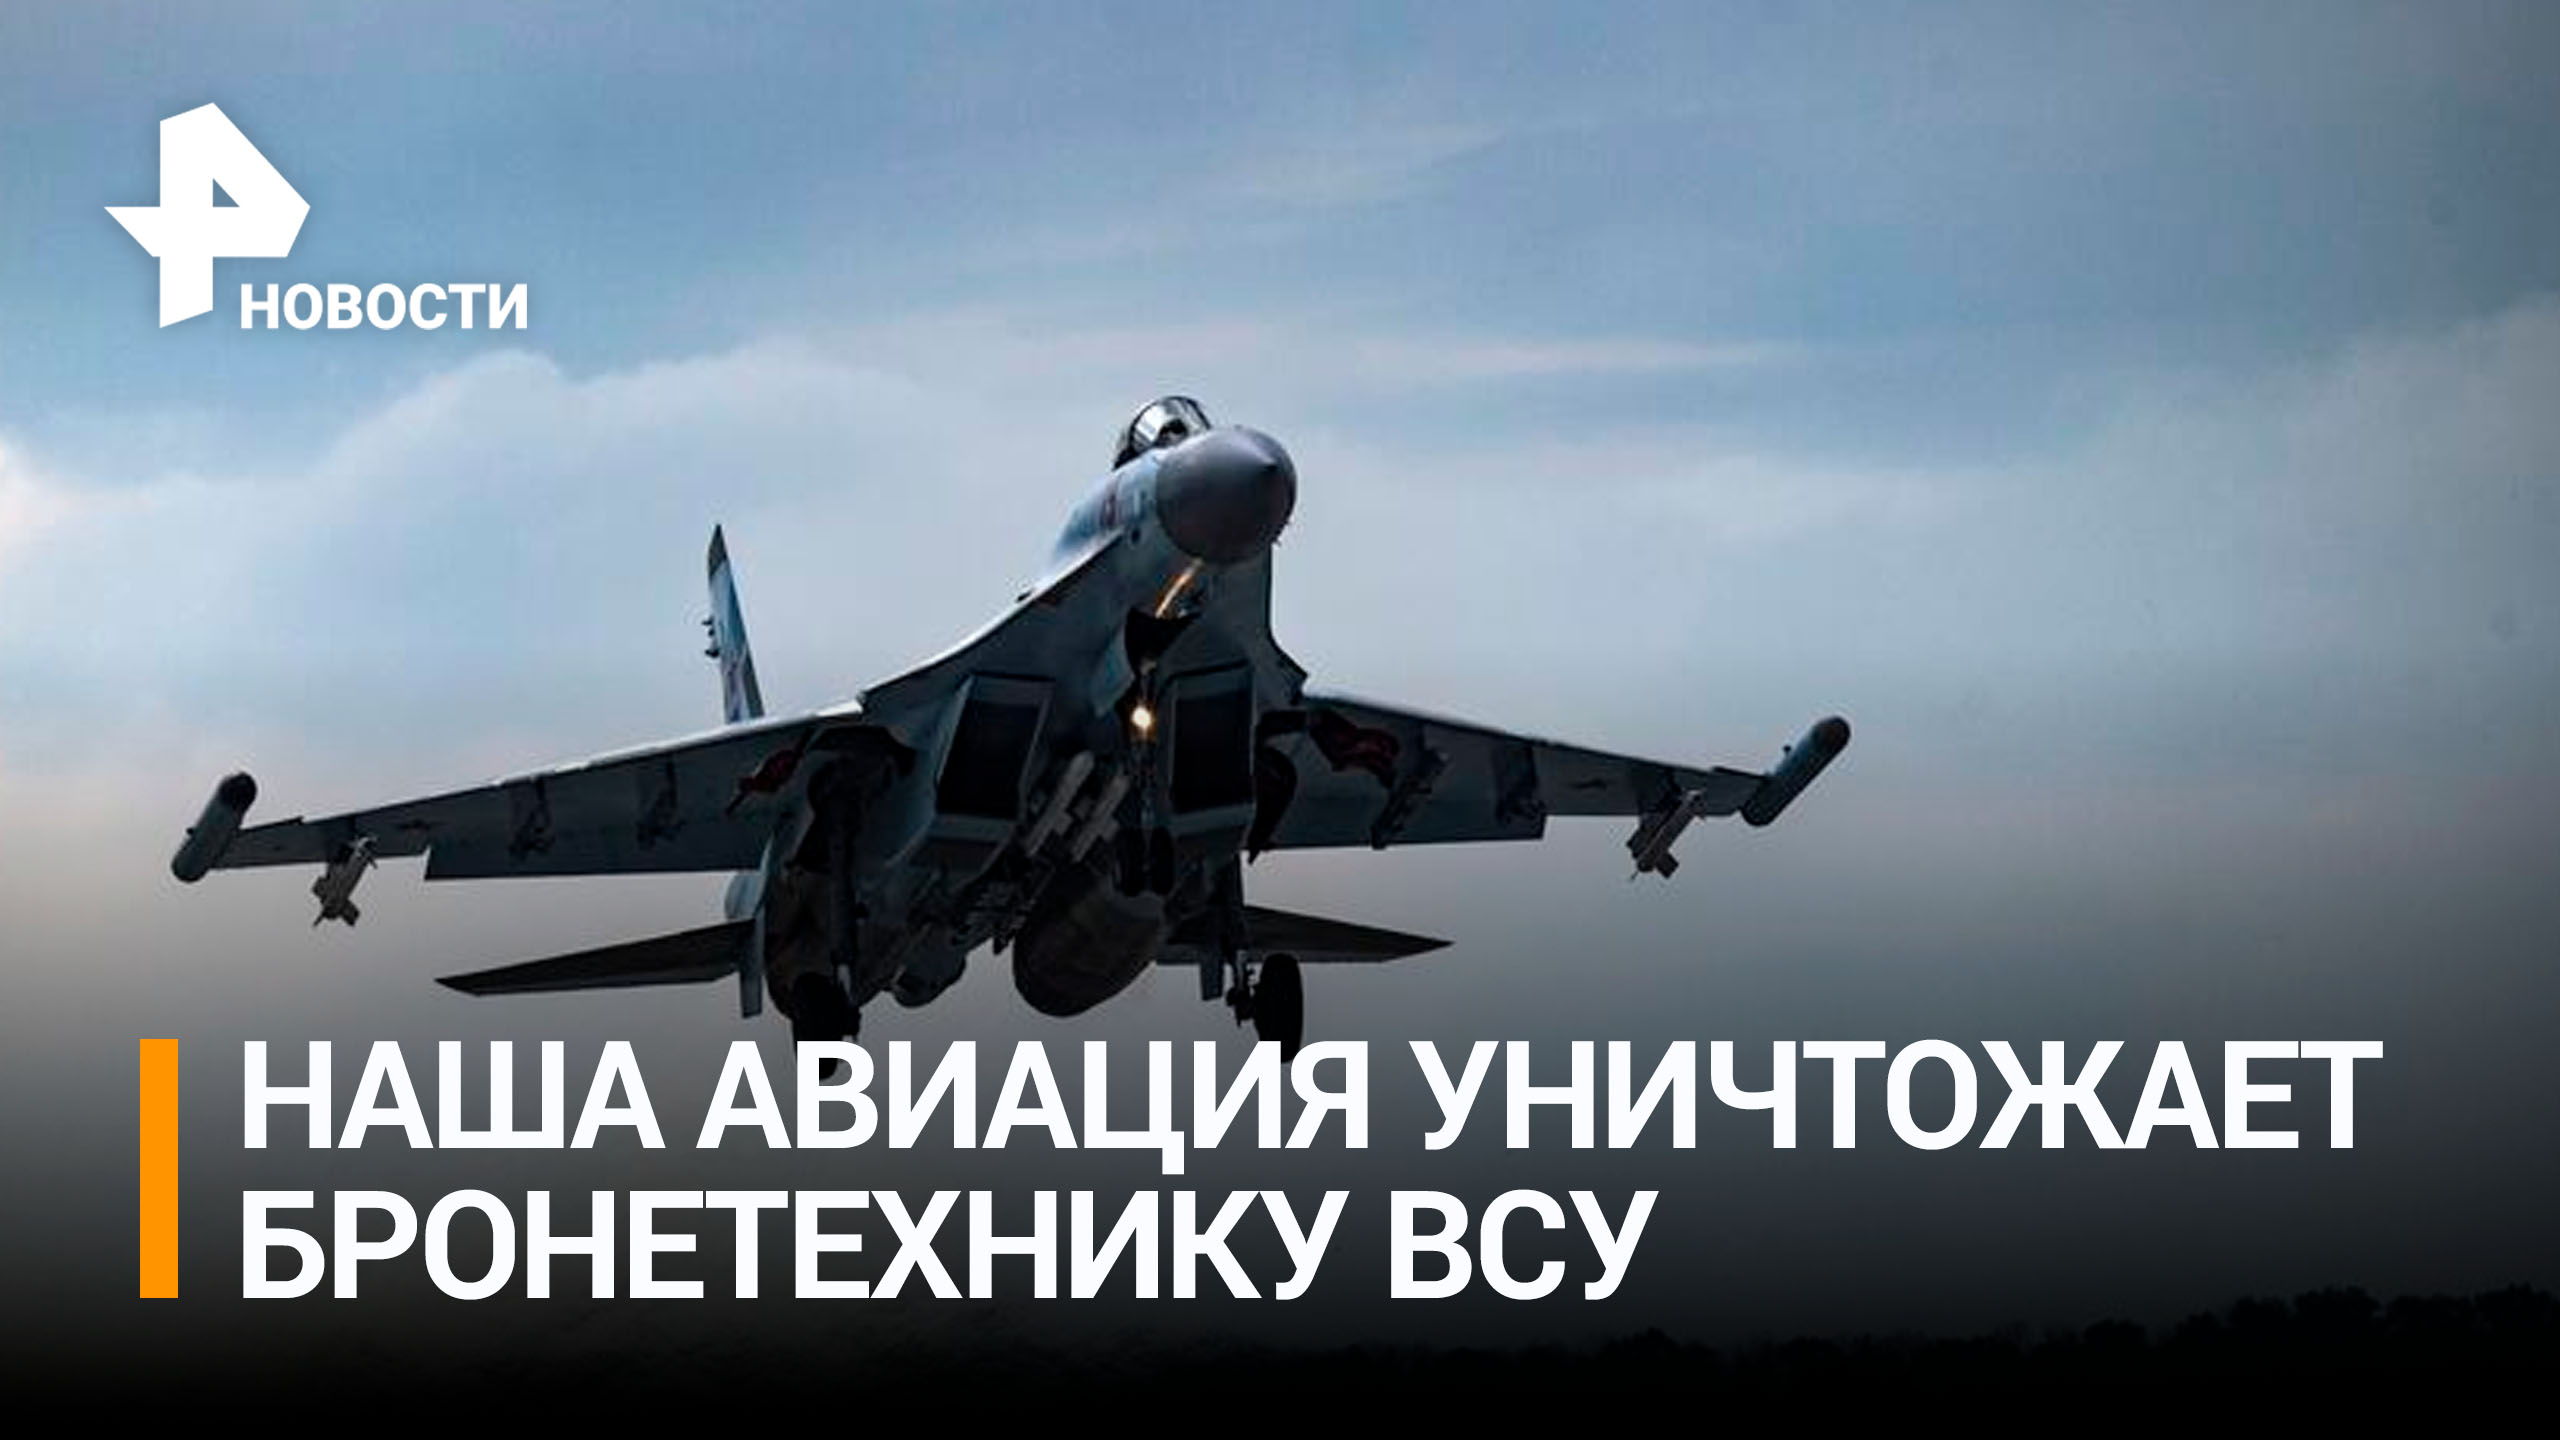 Штурмовики Су-25 уничтожили бронетехнику ВСУ / РЕН Новости